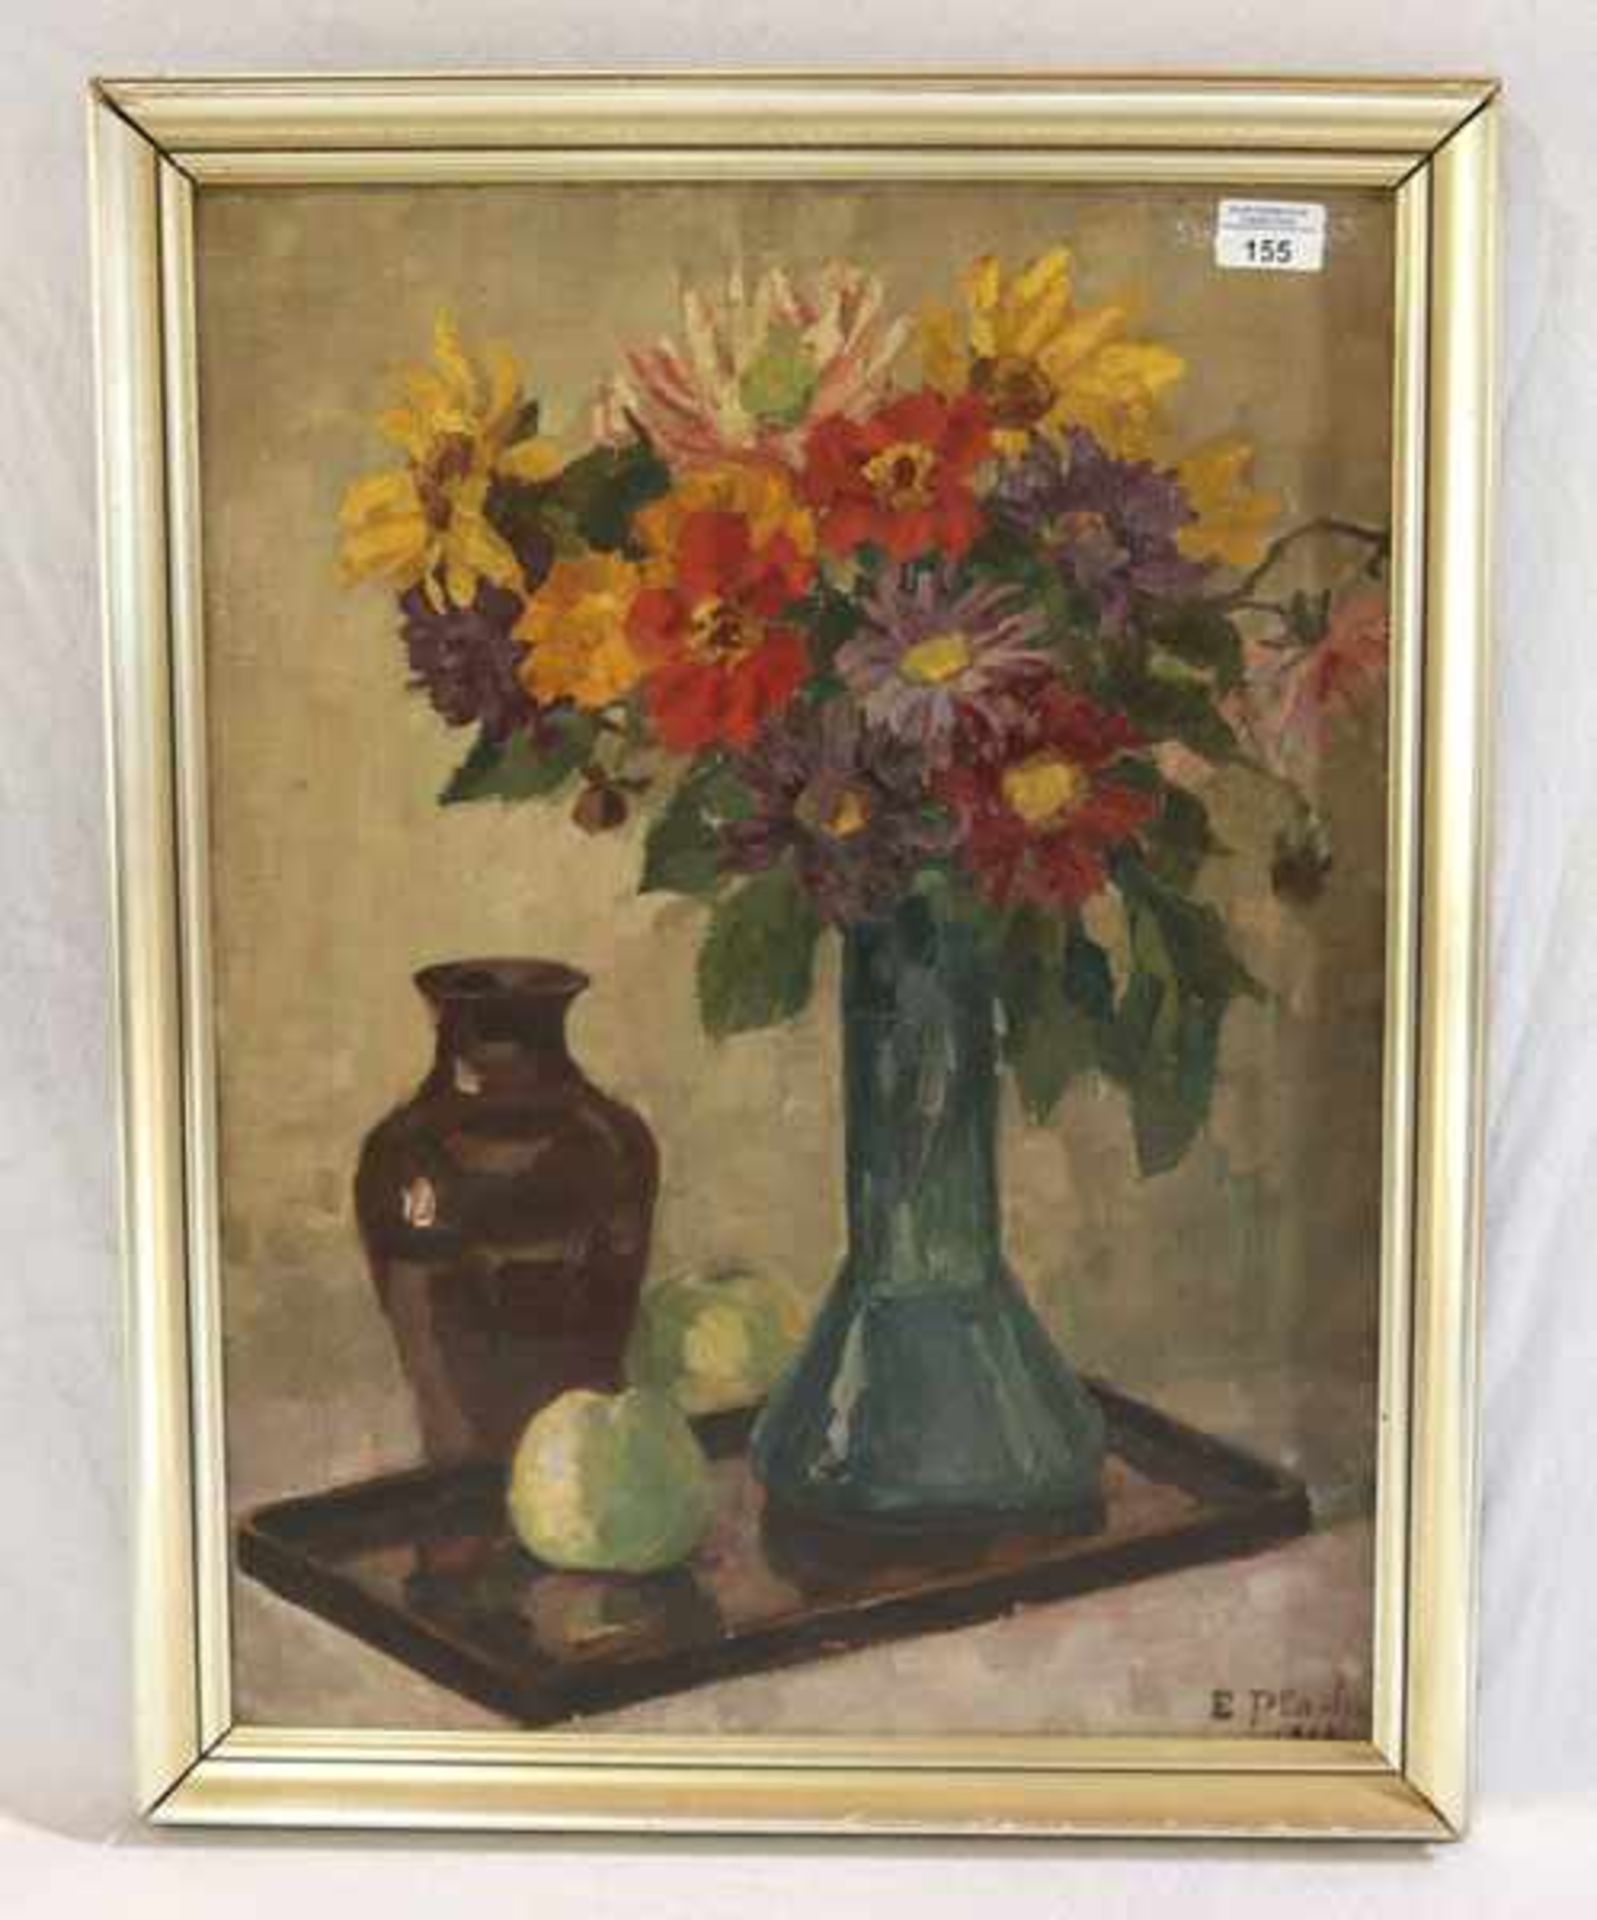 Gemälde ÖL/LW 'Blumenstillleben mit Vase und Äpfel', signiert E. Plad ? datiert 1915 ?, gerahmt,